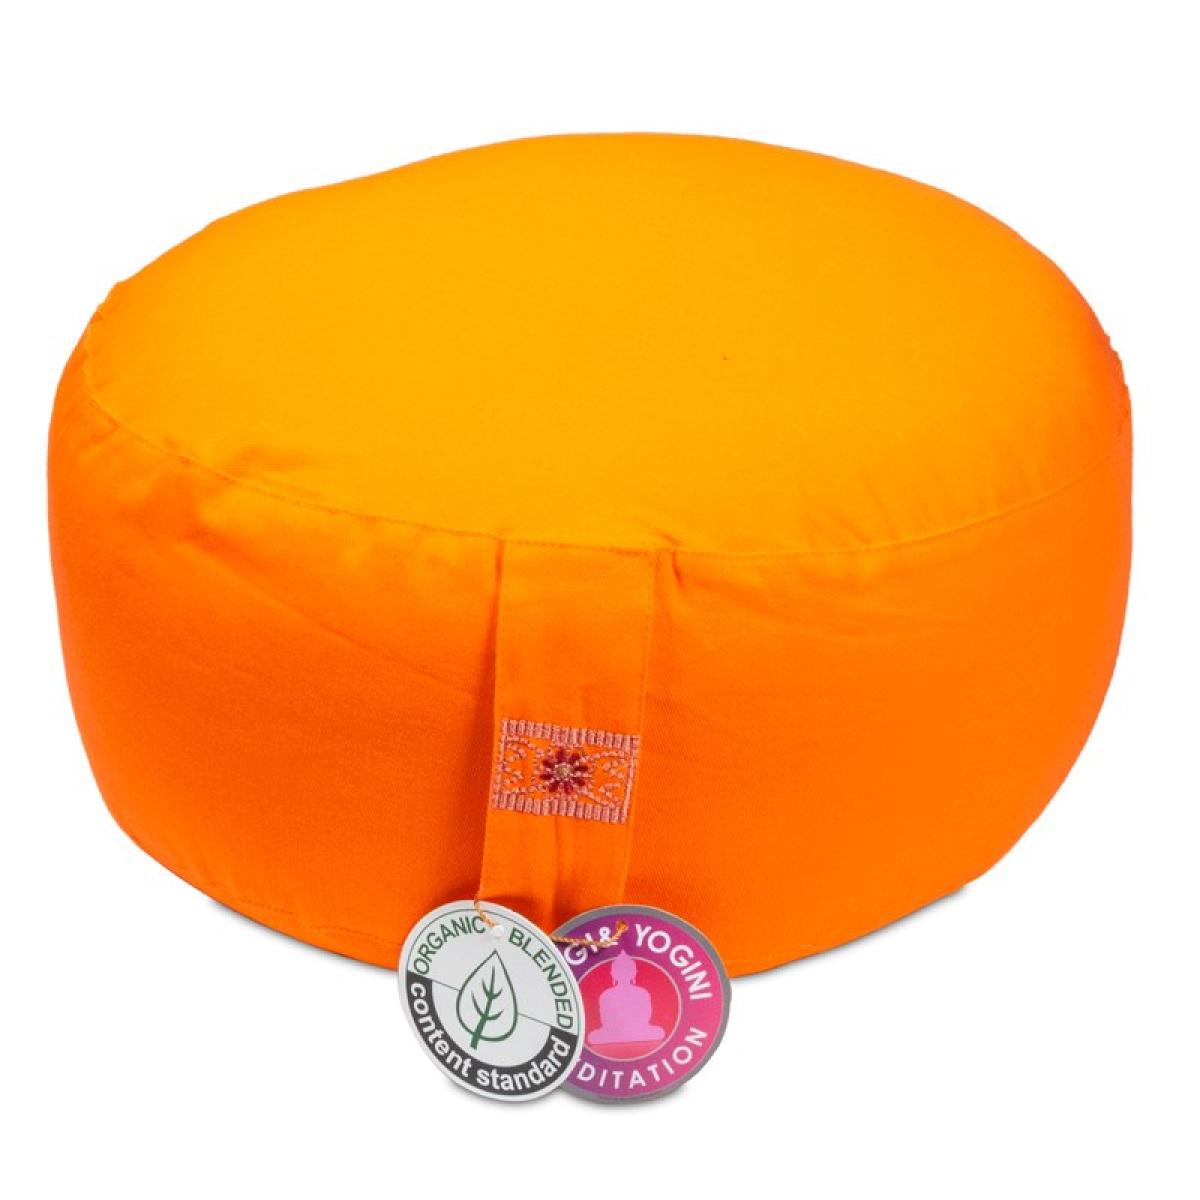 Yogi & Yogini Yoga & Mediation cushion orange ➤ www.bokken-shop.de buy › Yoga cushions ✓ 100% organic cotton. Your meditation specialist shop!